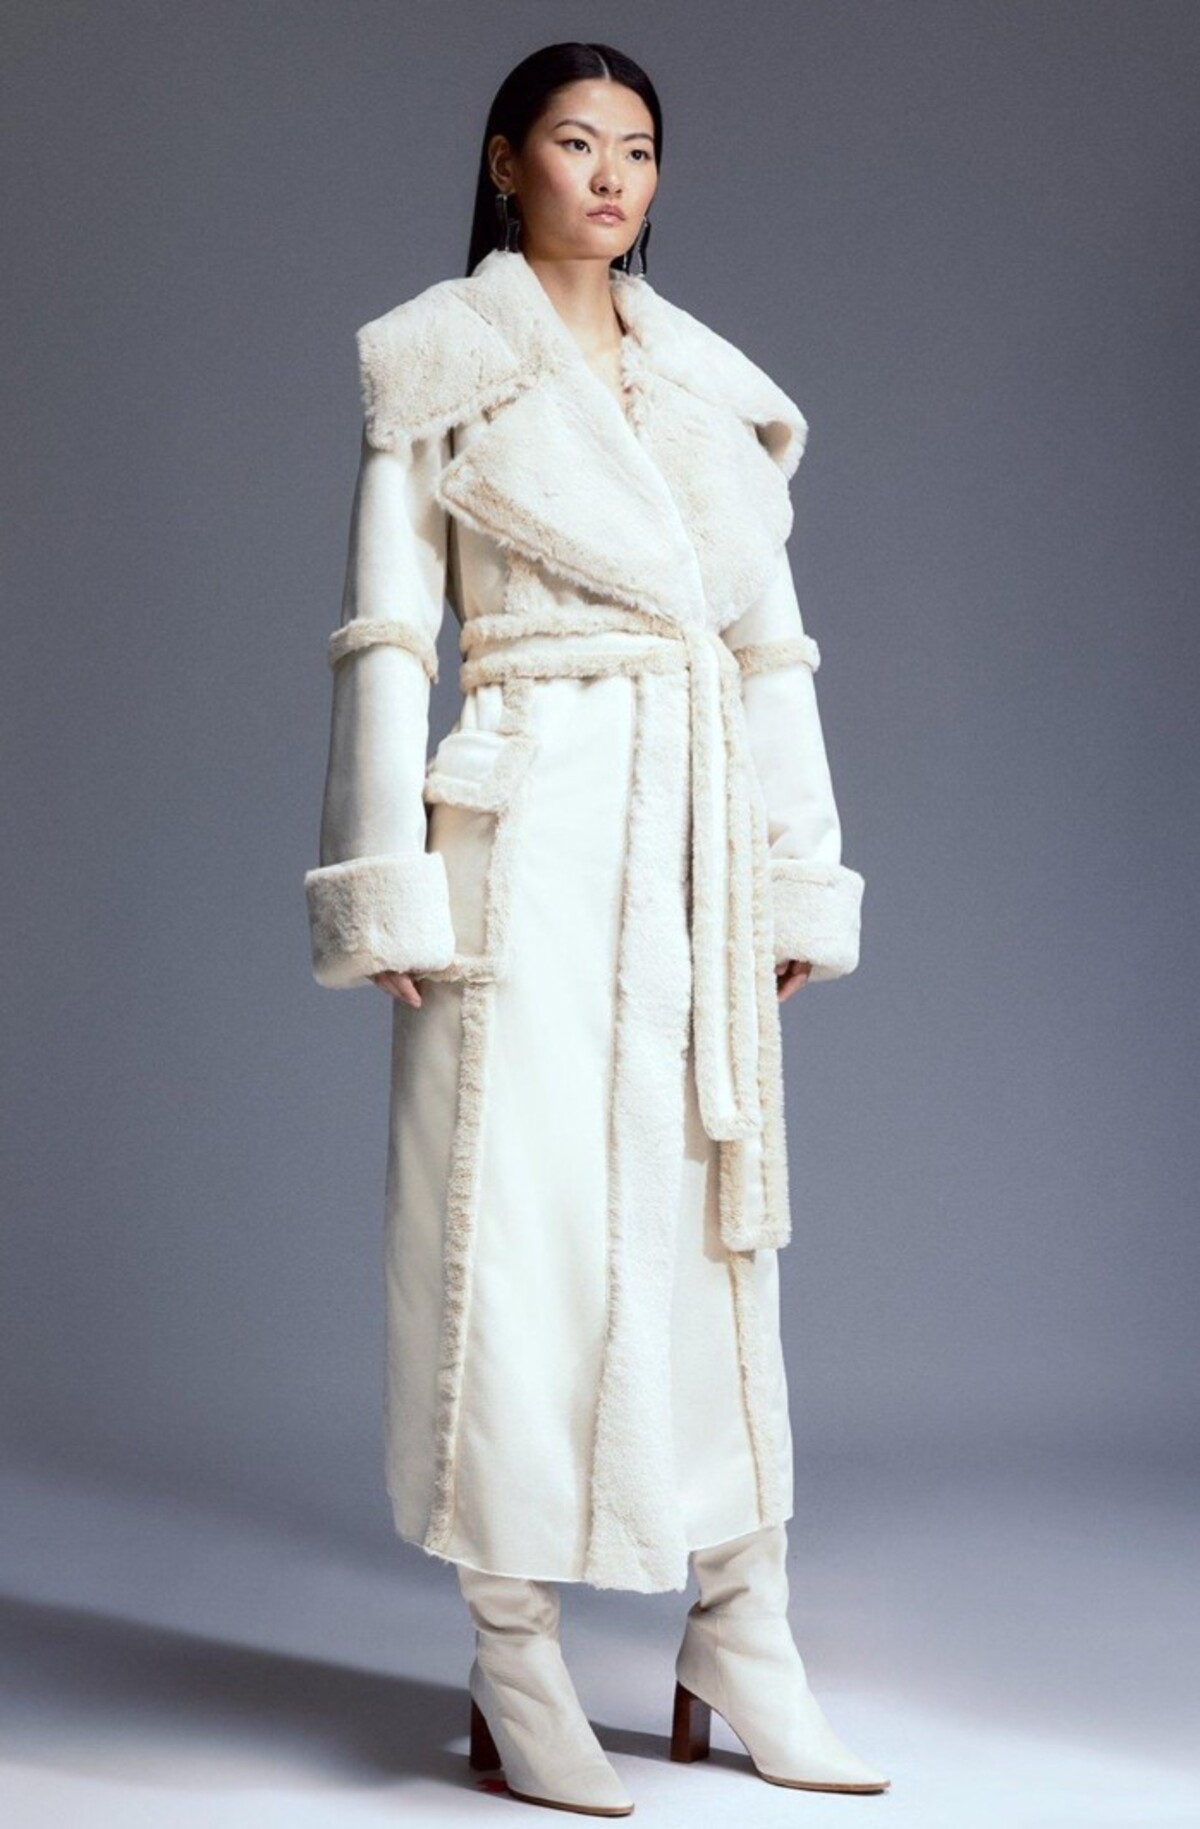 Maxi kabát v bielej farbe od Karen Millen upúta najmä výrazným lemom v oblasti dekoltu a rukávov. Neprehliadnuteľným prvkom je aj ladiaci opasok z nepravej kožušiny. Konkrétny kúsok na fotke kúpiš za 228 eur.
